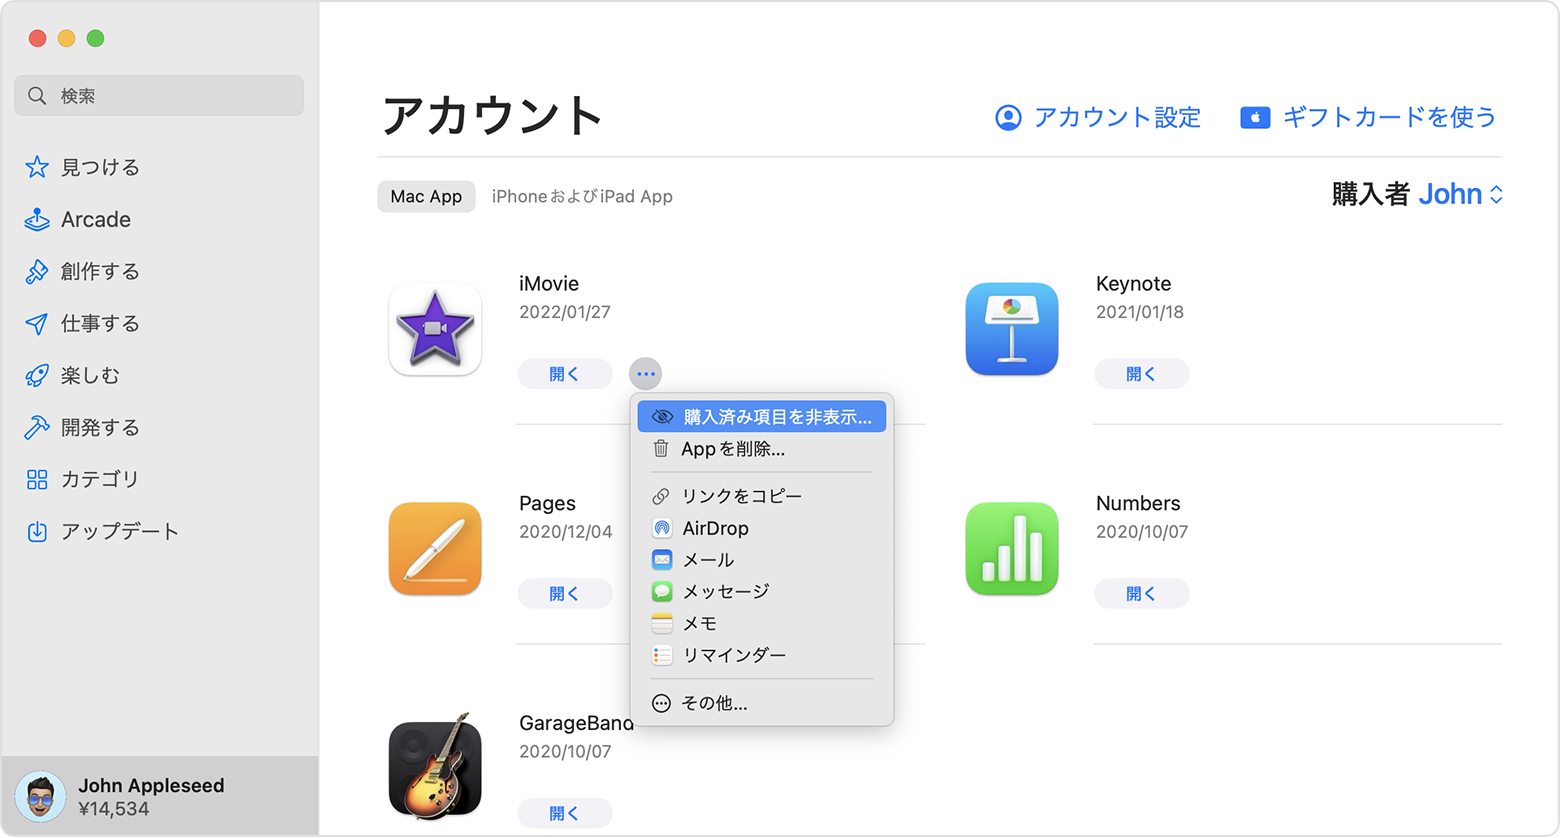 App Store で購入した App を非表示にする - Apple サポート (日本)